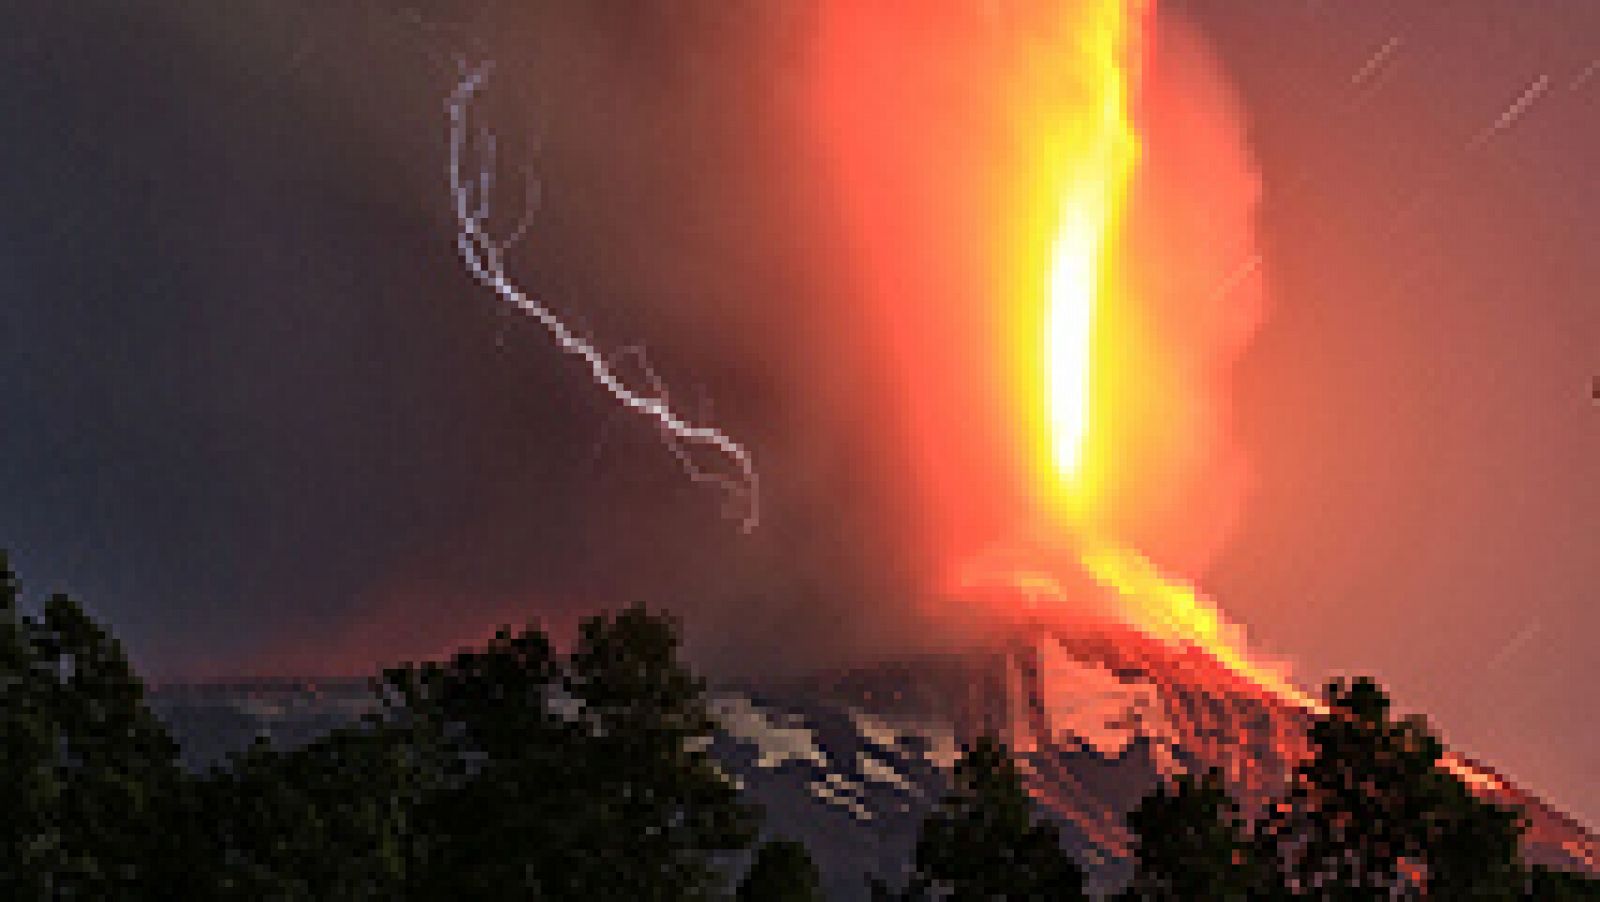 El volcán chileno Villarrica, situado en la región de la Araucanía, ha entrado en erupción por lo que las autoridades han decretado la alerta roja y han iniciado la evacuación de las poblaciones aledañas.